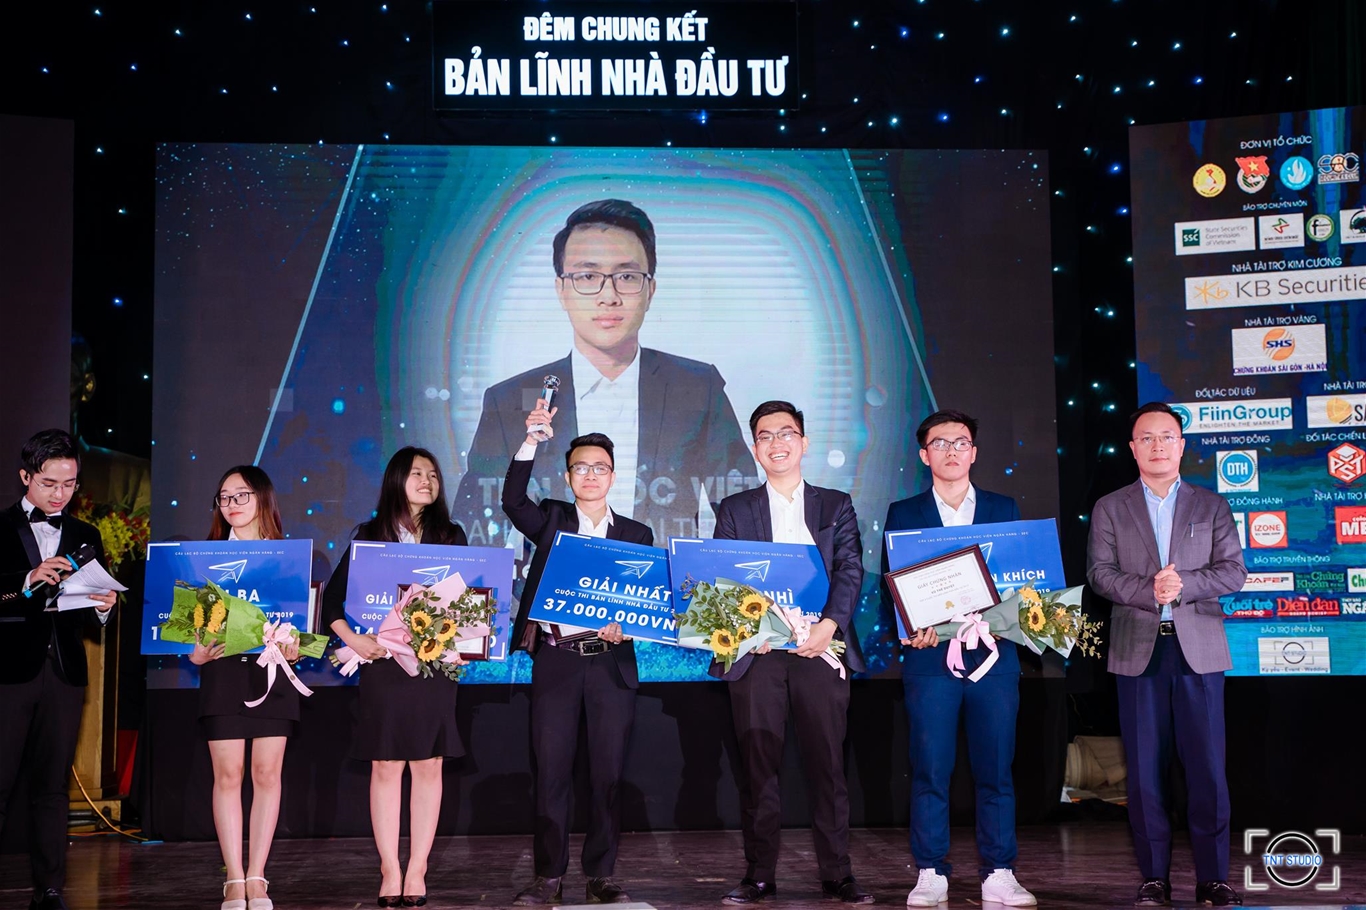 Quán quân Bản lĩnh Nhà đầu tư 2019 - Tiền Quốc Việt đến từ Đại học Ngoại thương (FTU)